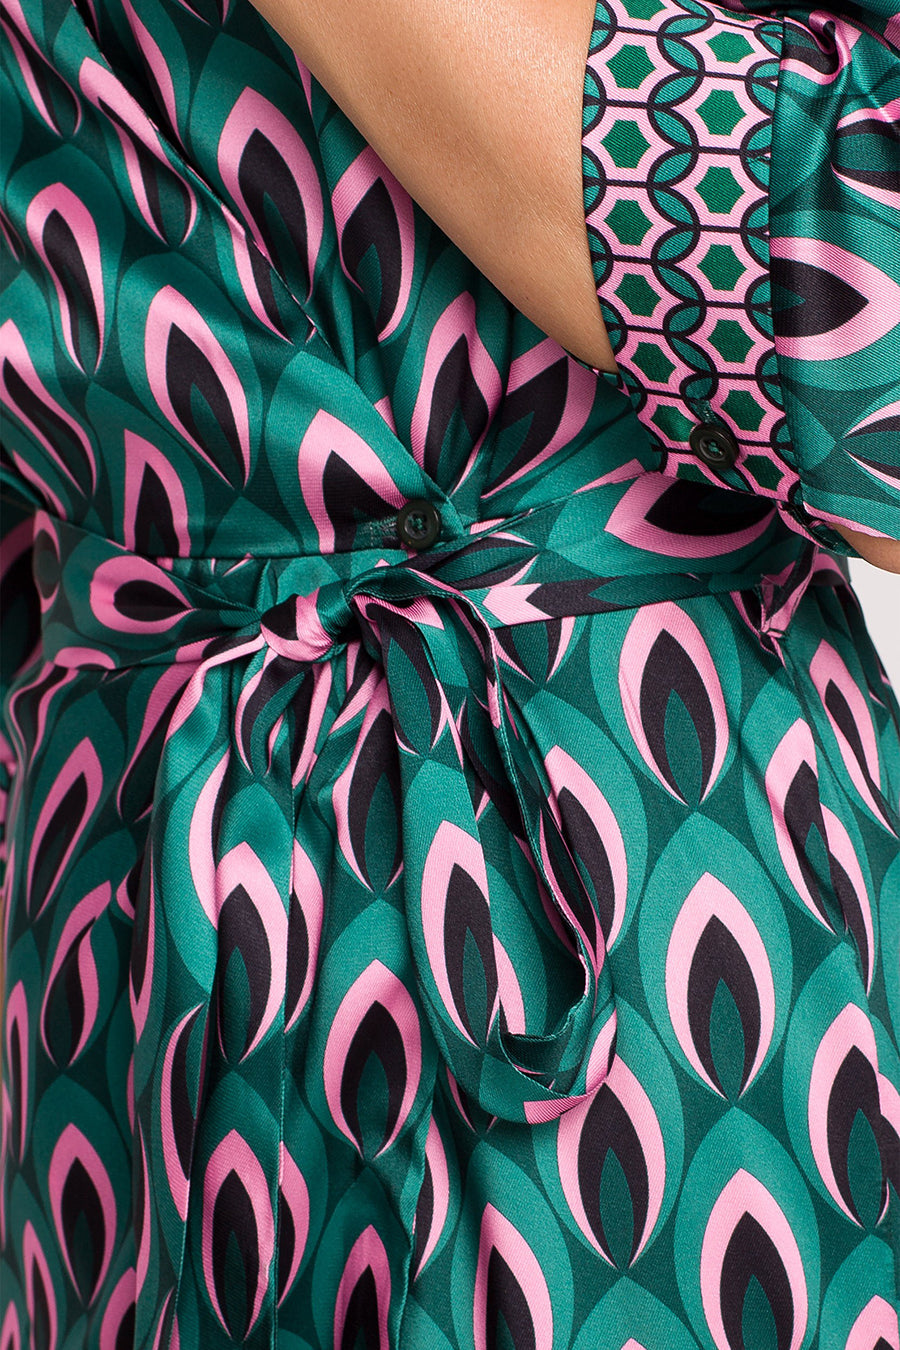 Γυναικείο φόρεμα Merisa, Πράσινο/Ροζ 5